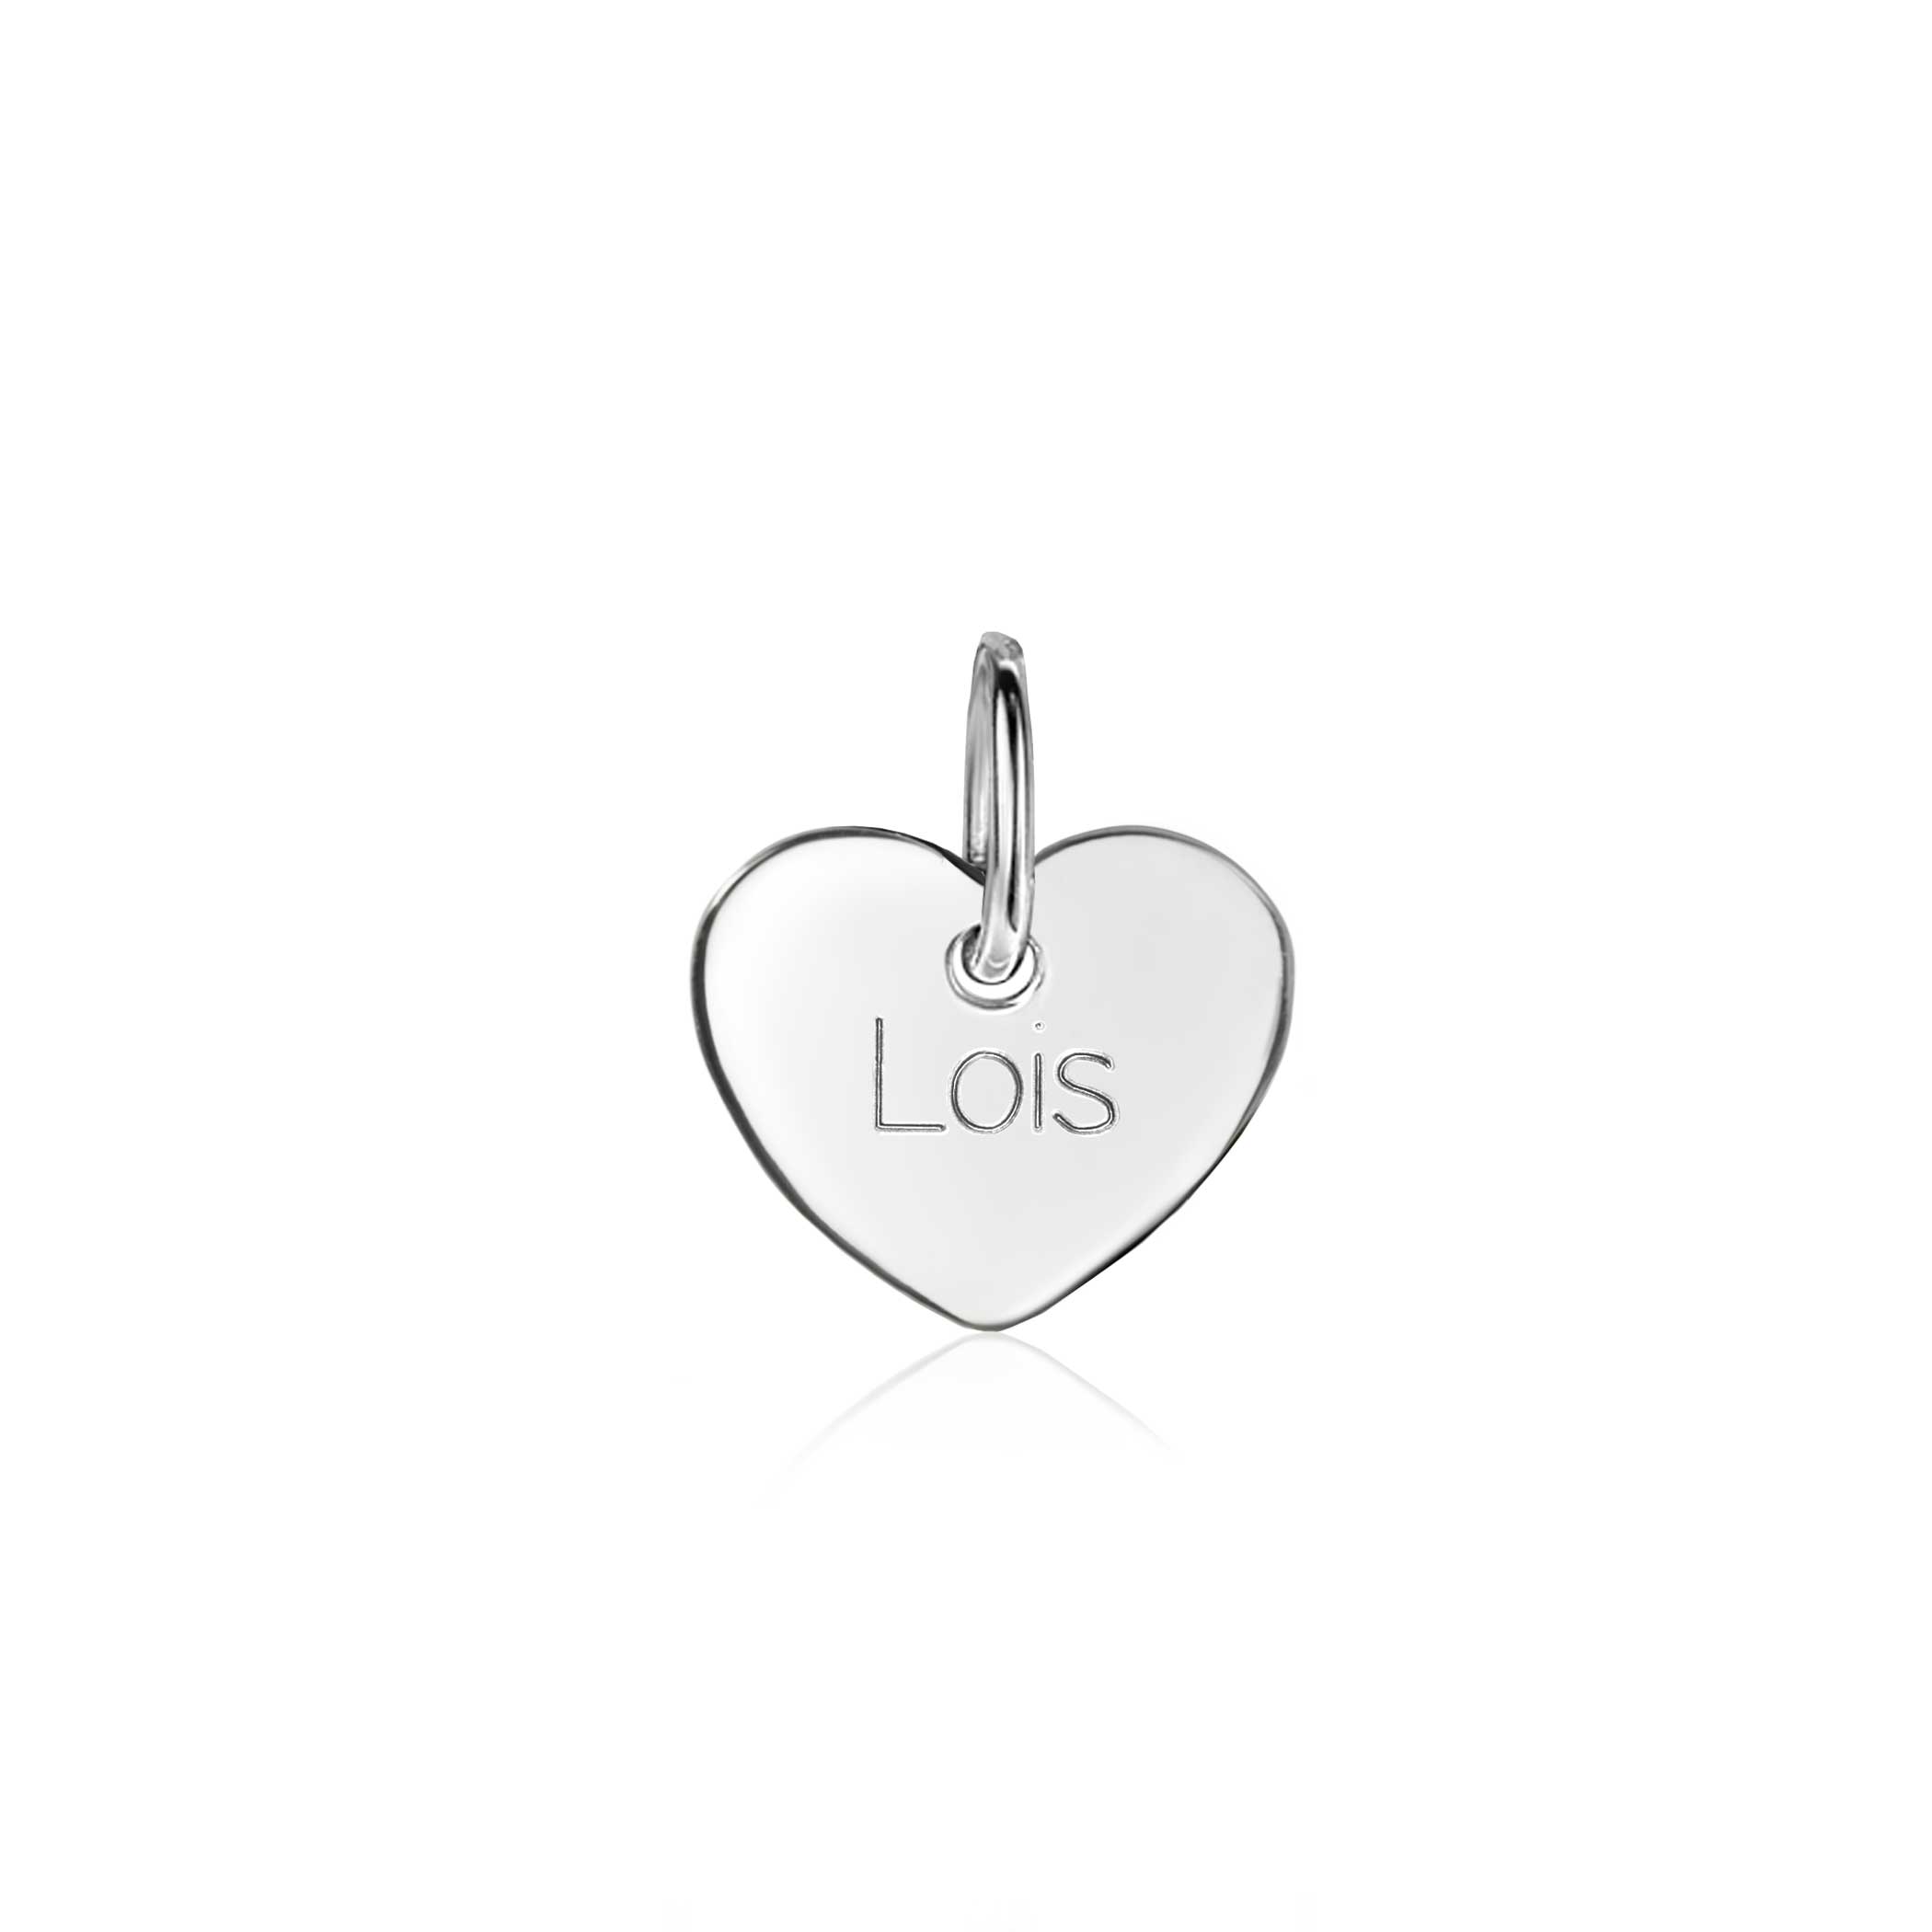 ZINZI zilveren hanger glad hart 12mm voor gravure ZIH2346-12 (zonder collier)